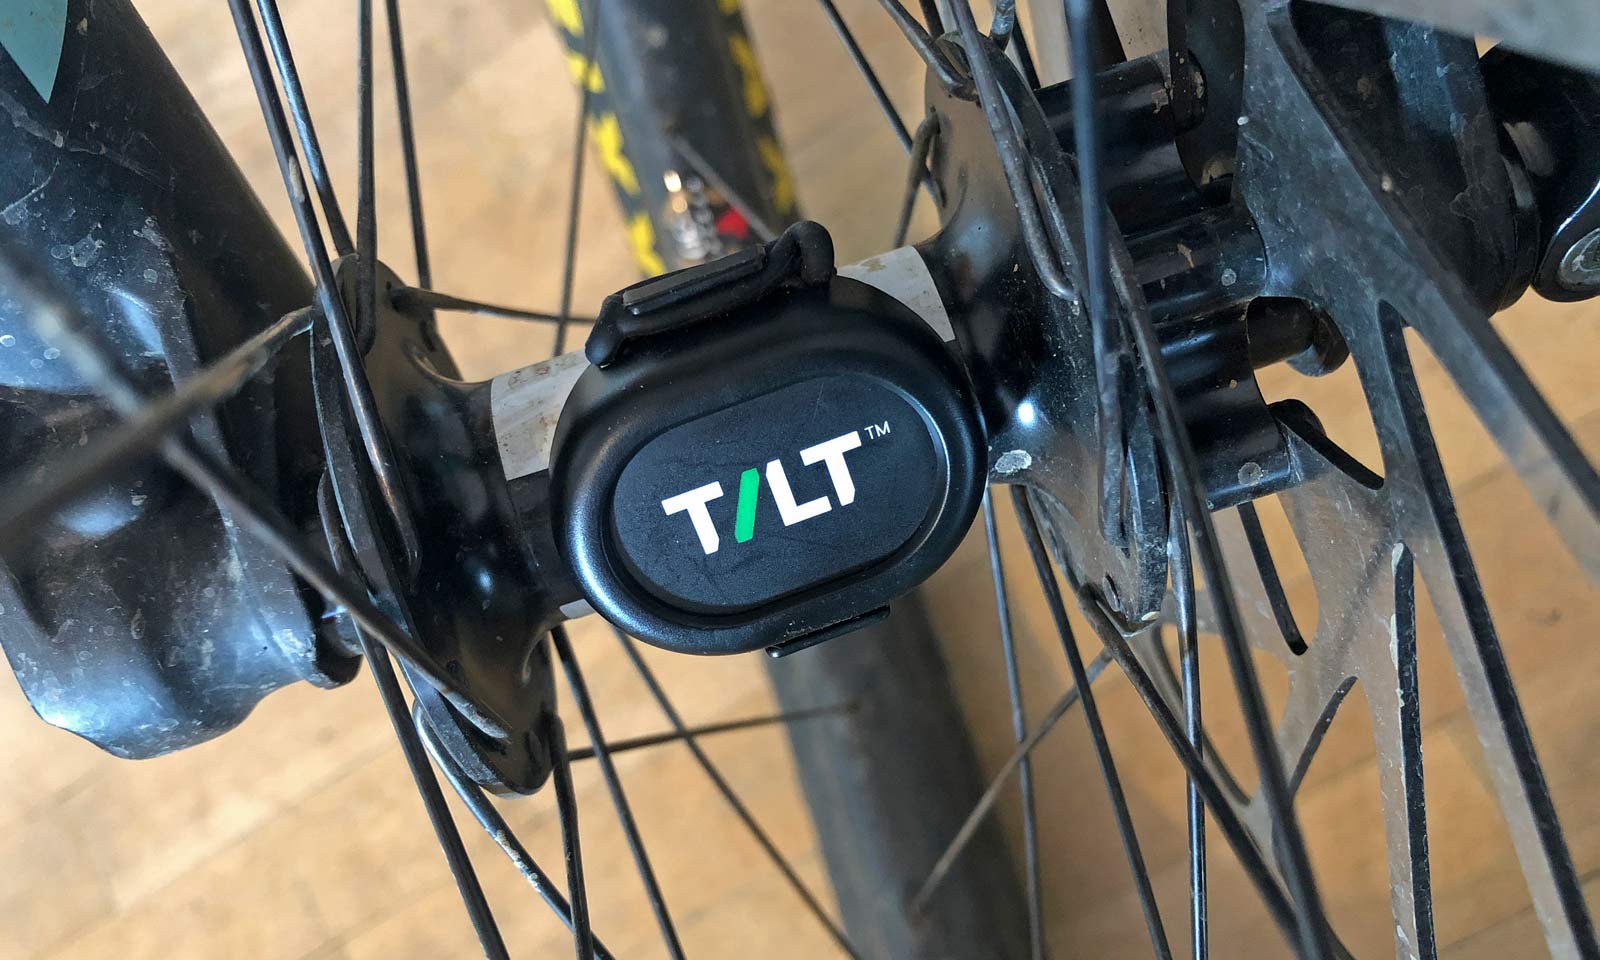 TILT mountain bike crash sensor builds safer community of riders